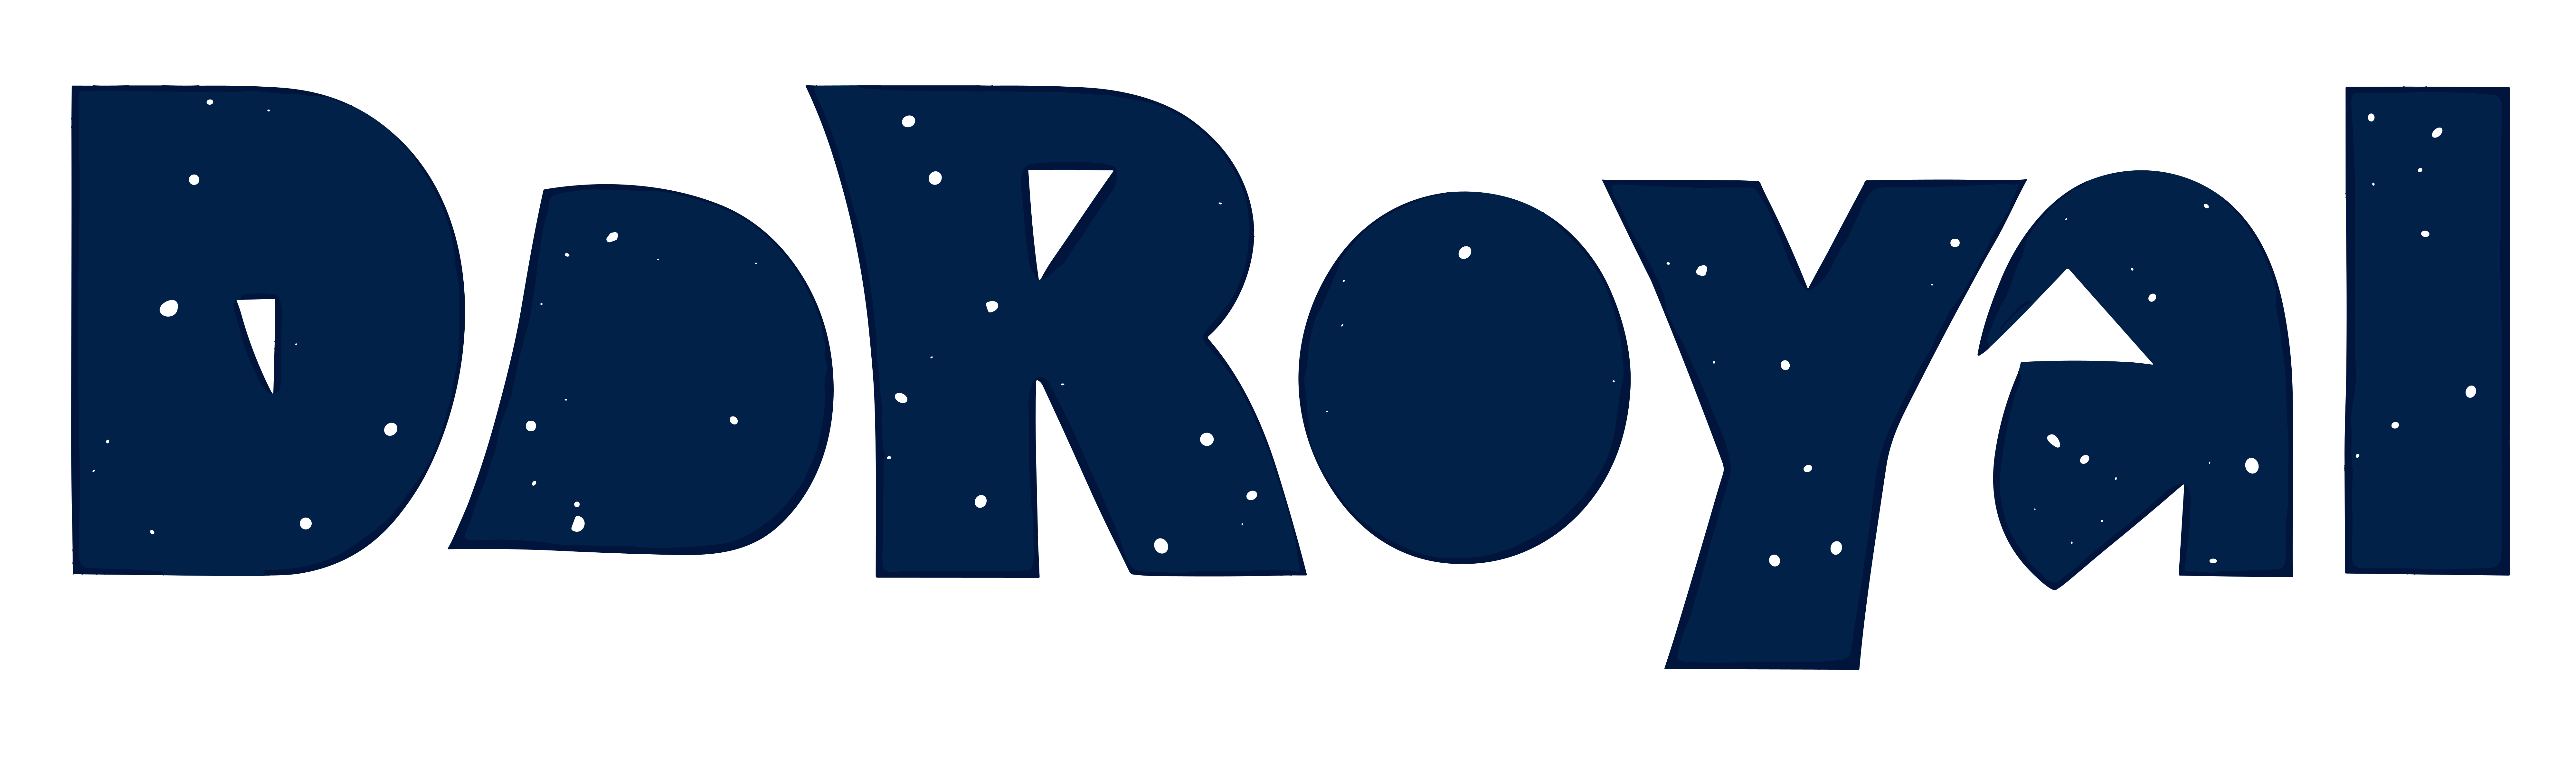 [DoRoyal] Logo